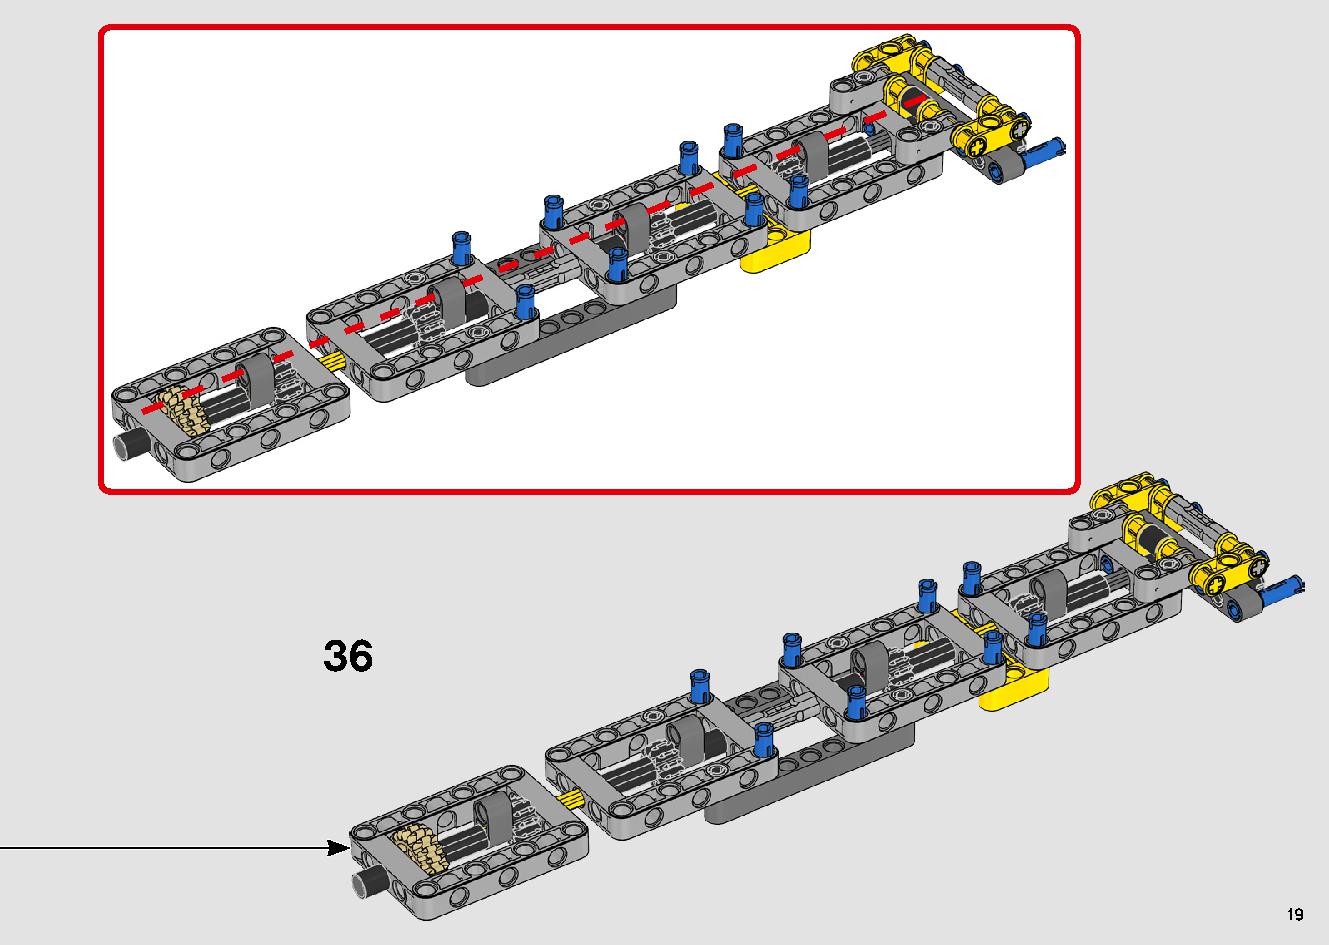 移動式クレーン車 42108 レゴの商品情報 レゴの説明書・組立方法 19 page